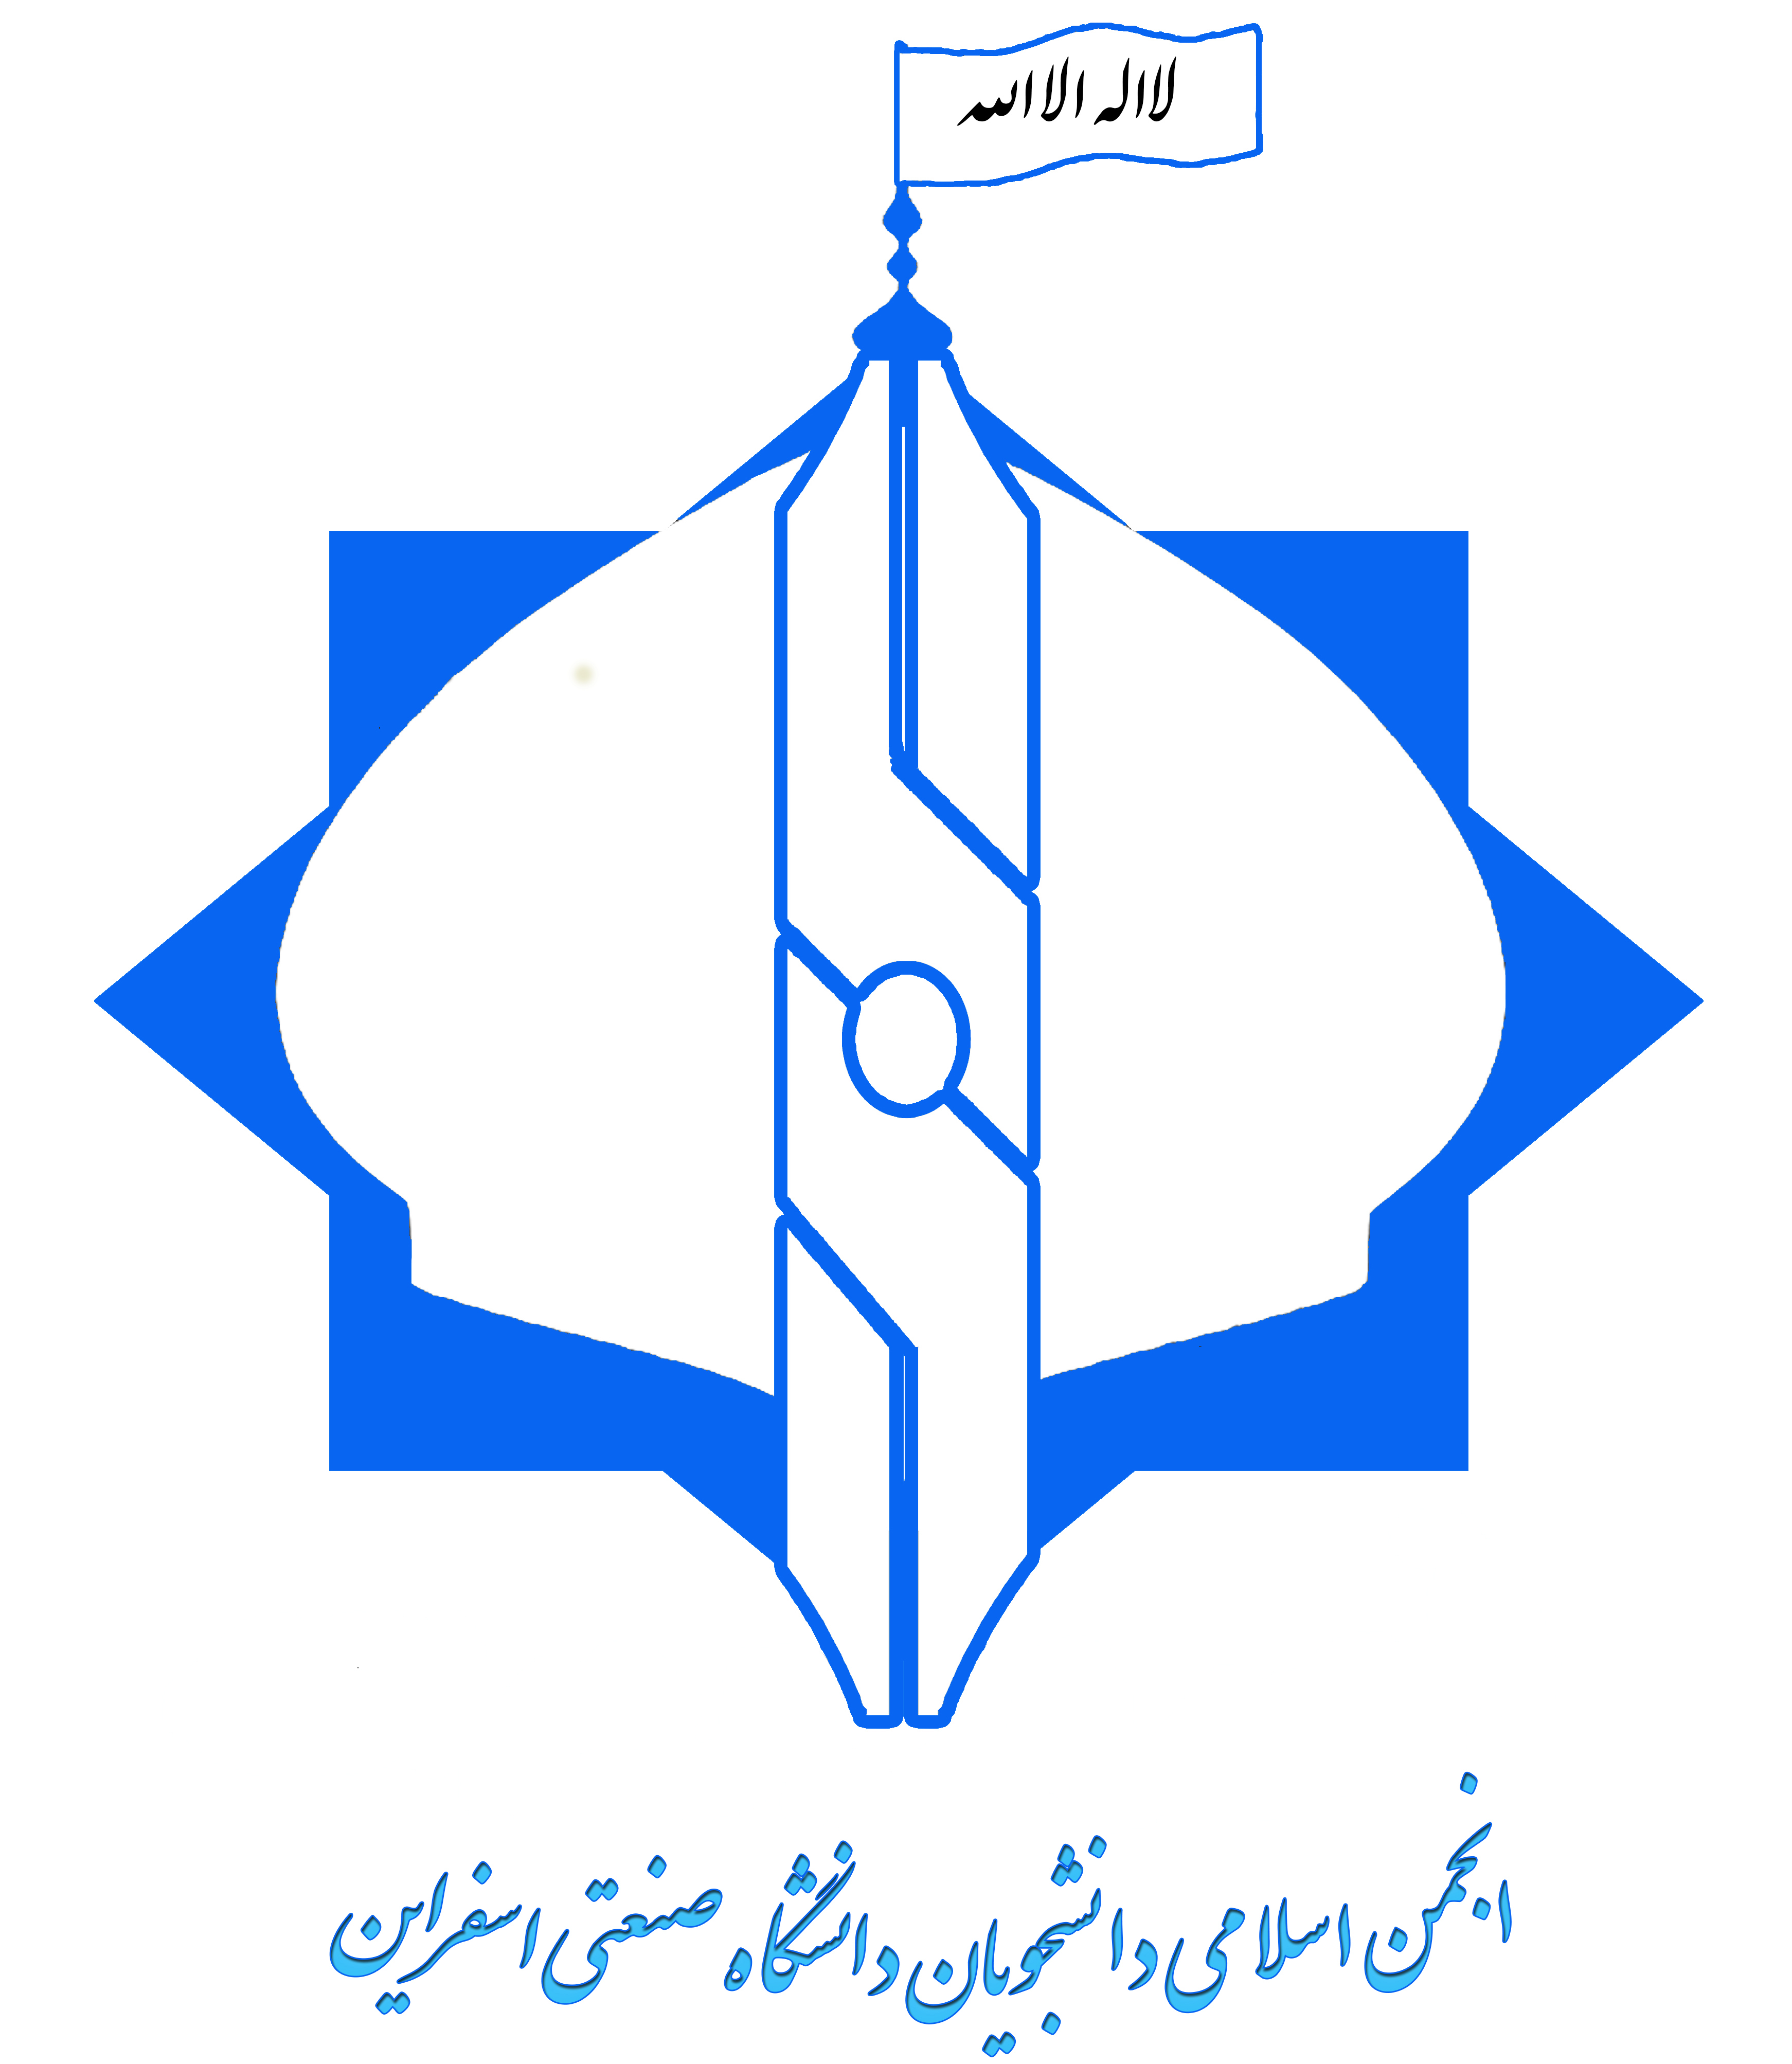 انجمن اسلامی دانشگاه اسفراین(عضو دفتر تحکیم وحدت)